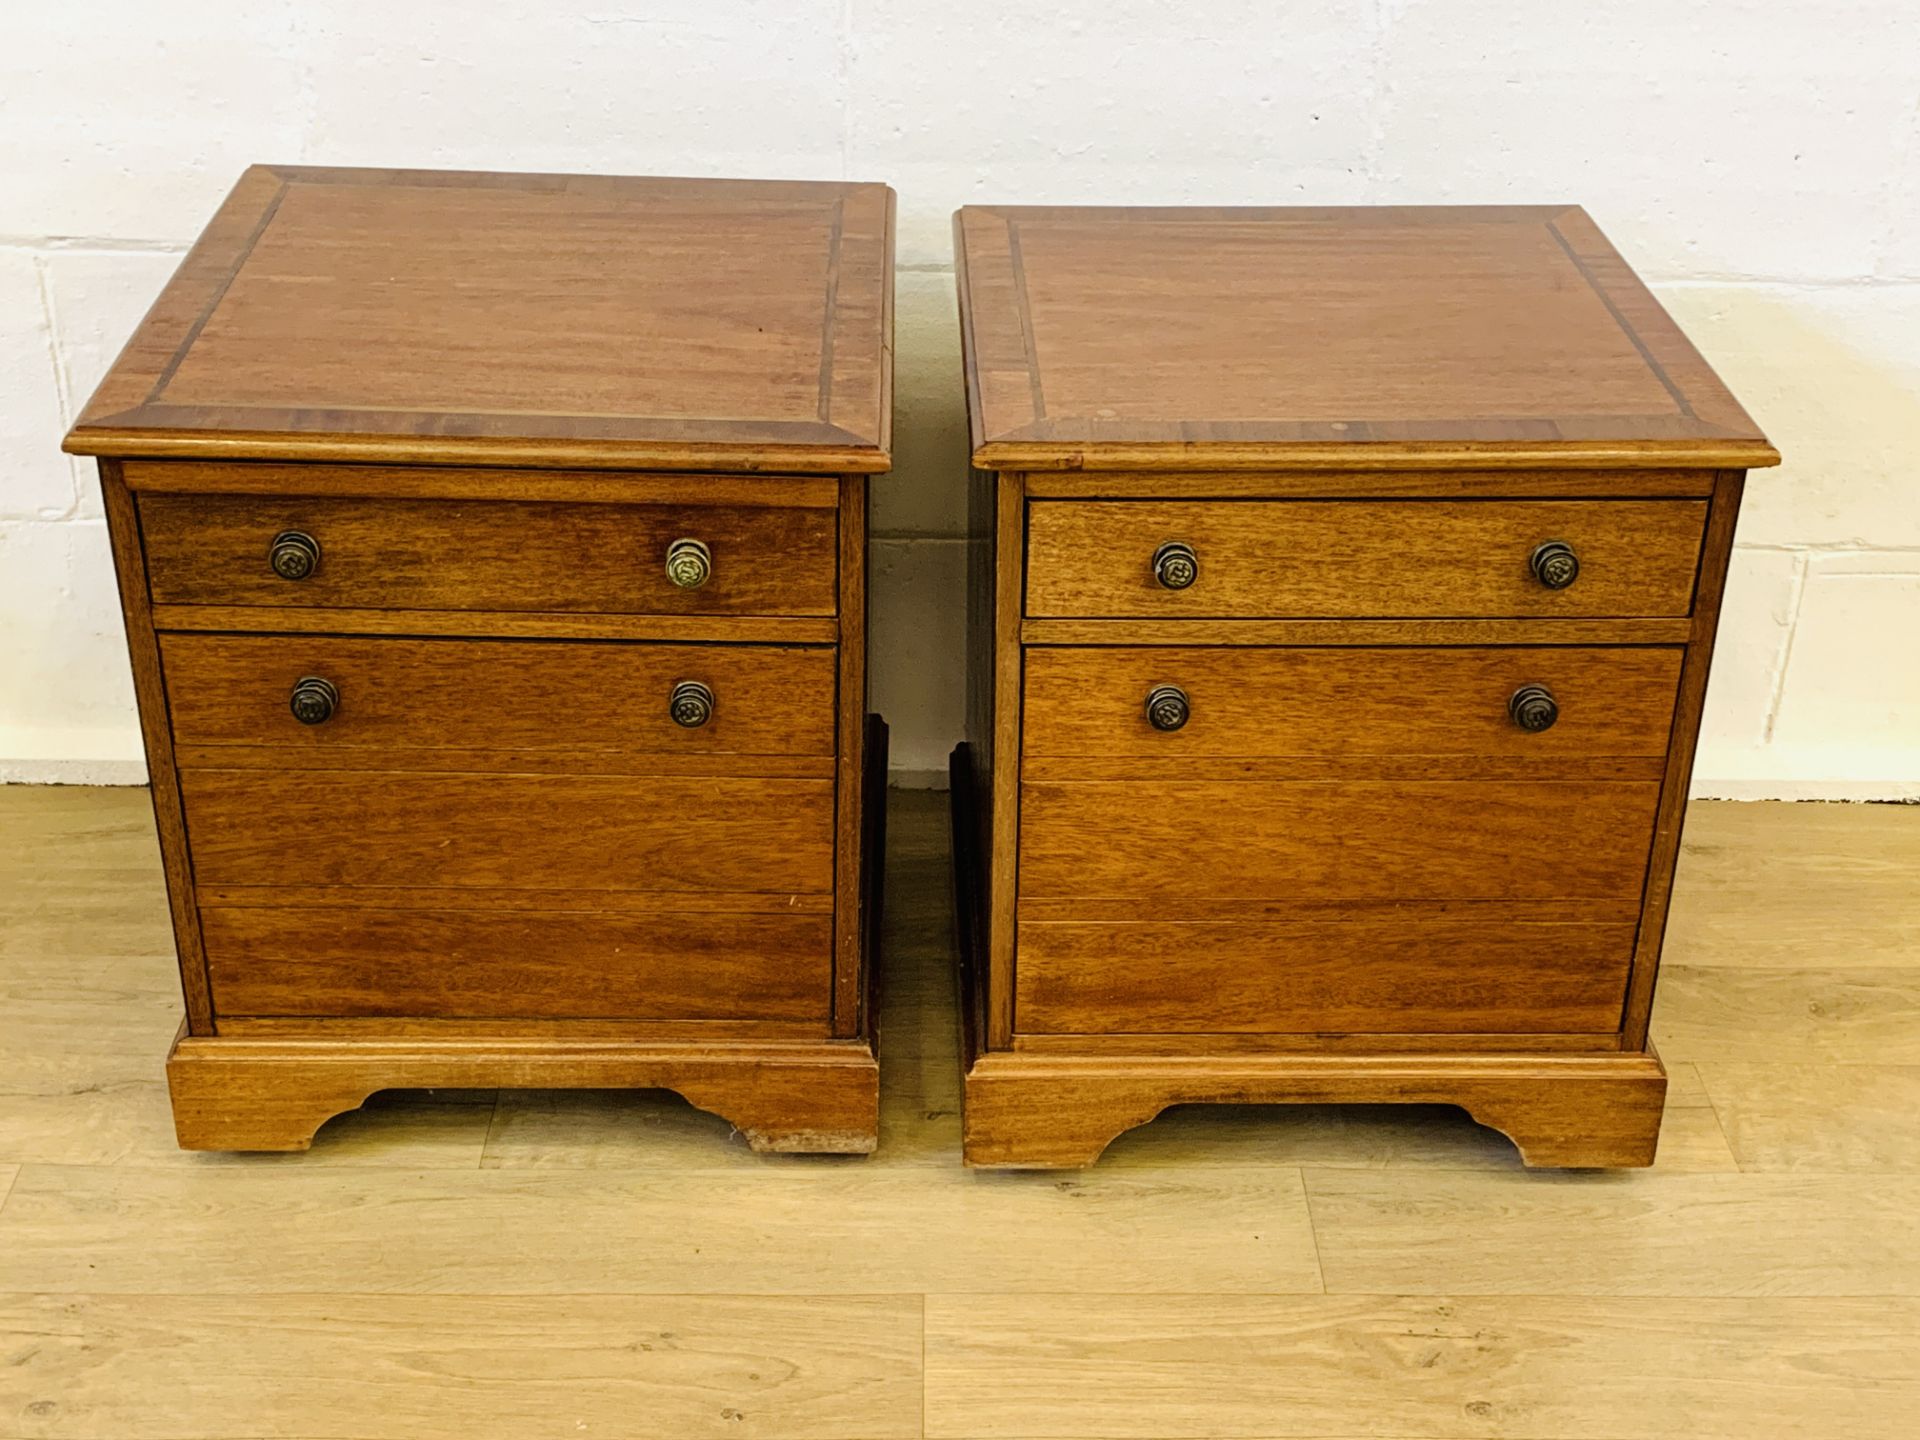 Two mahogany drawer units